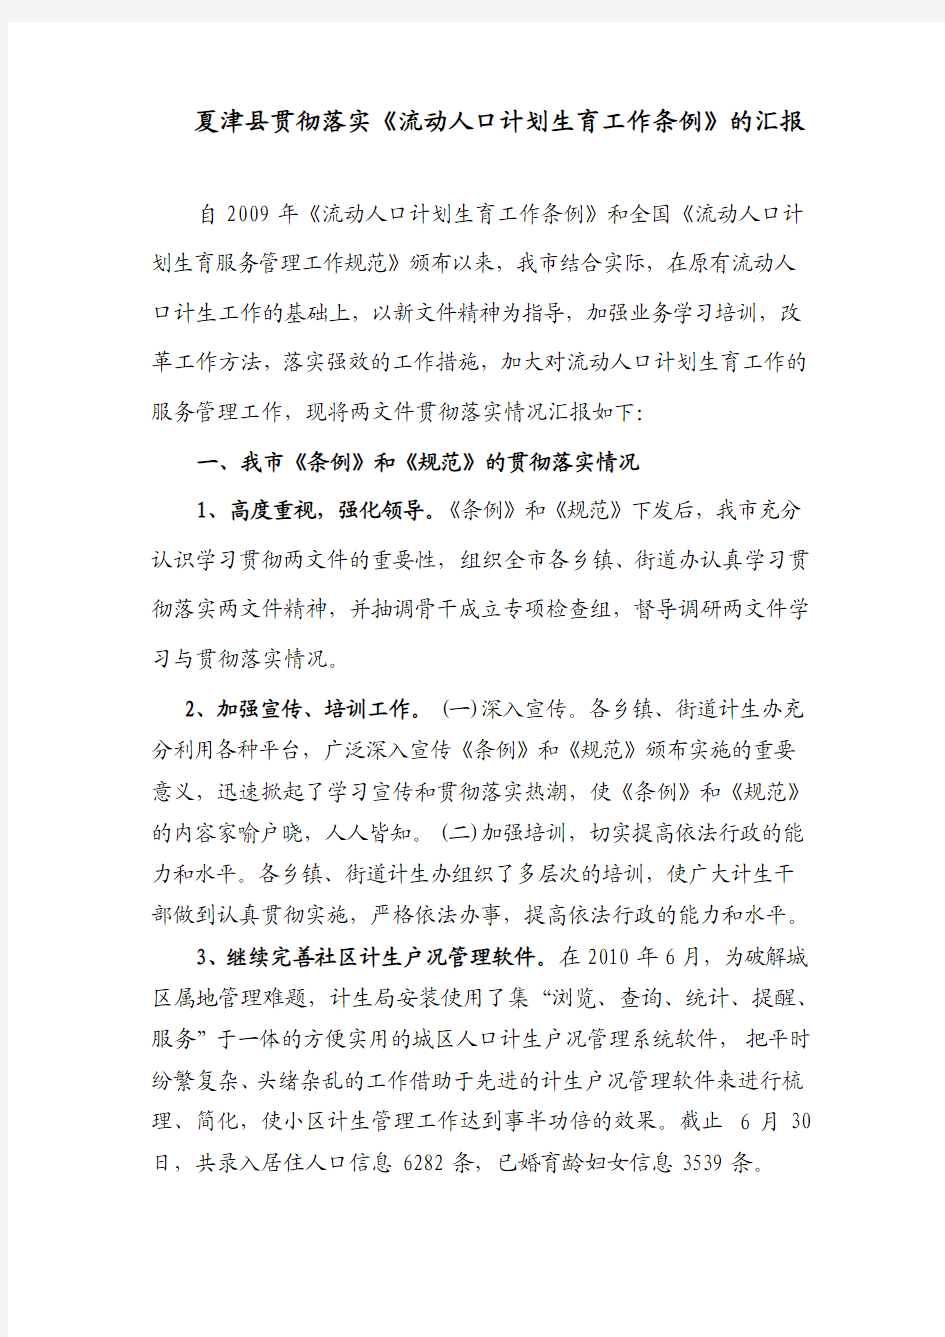 夏津县贯彻落实《流动人口计划生育工作条例》的汇报